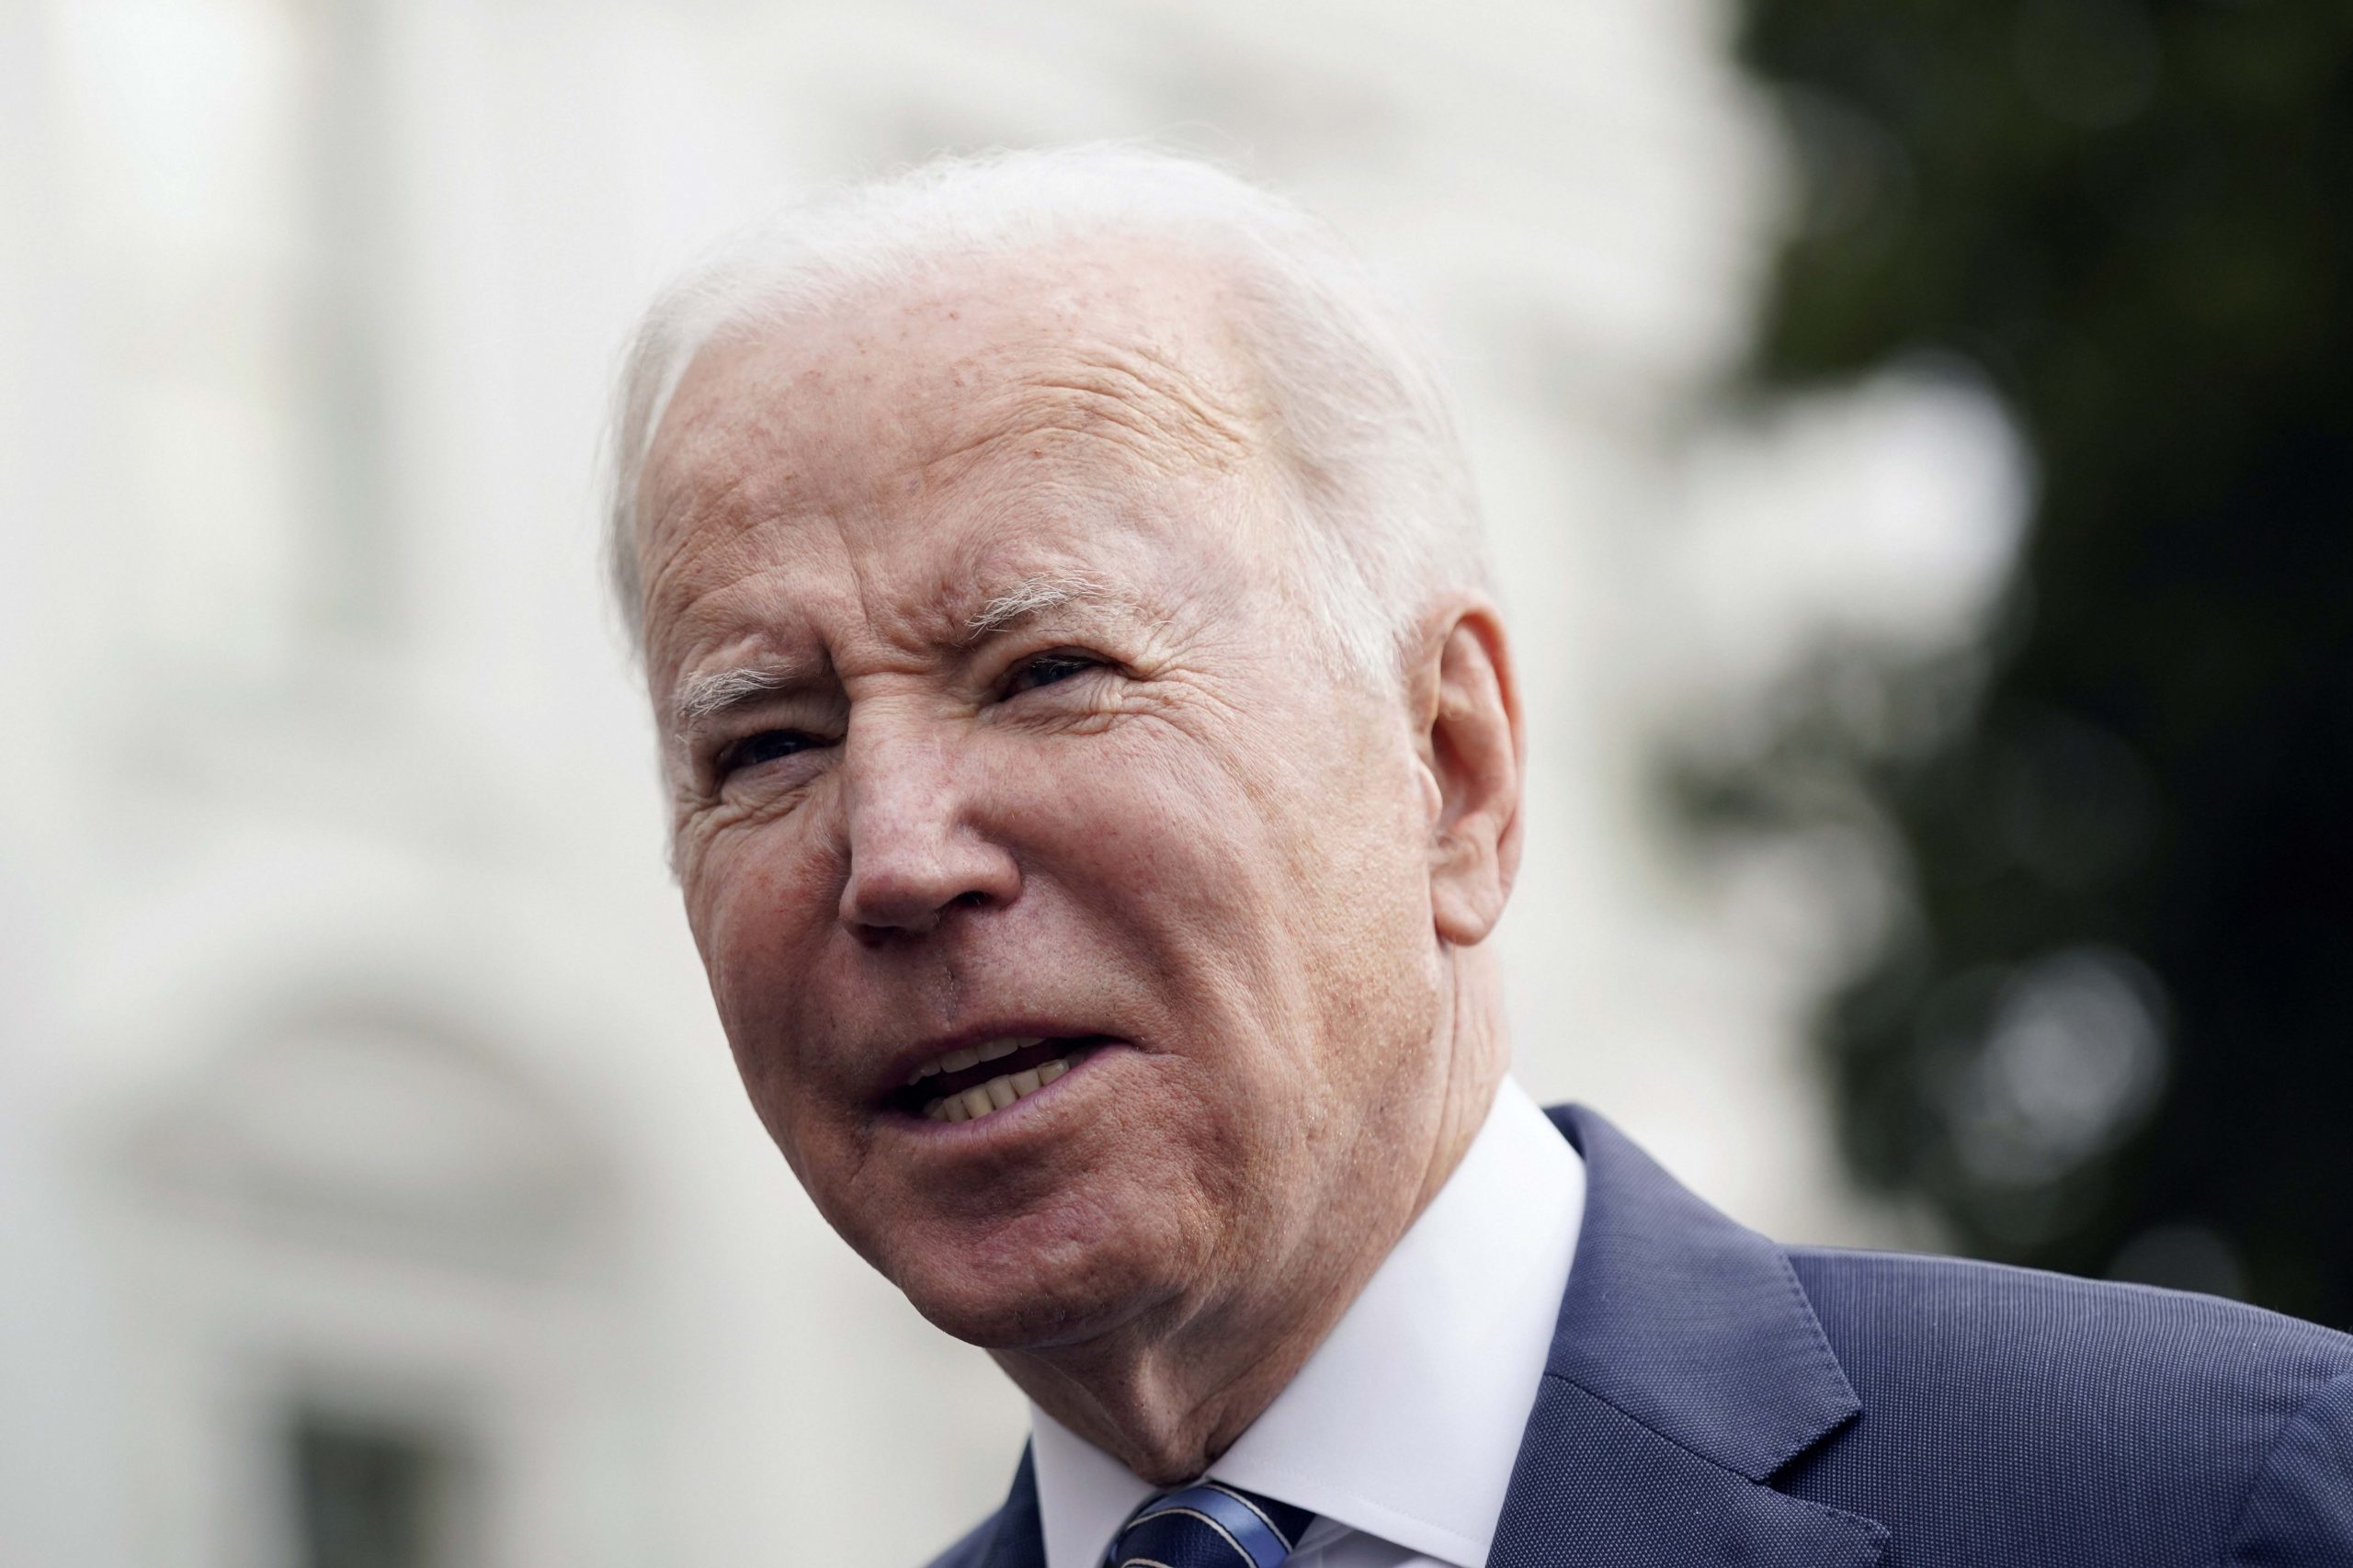 Joe Biden condemns Russian recognition of Ukraine breakaway regions